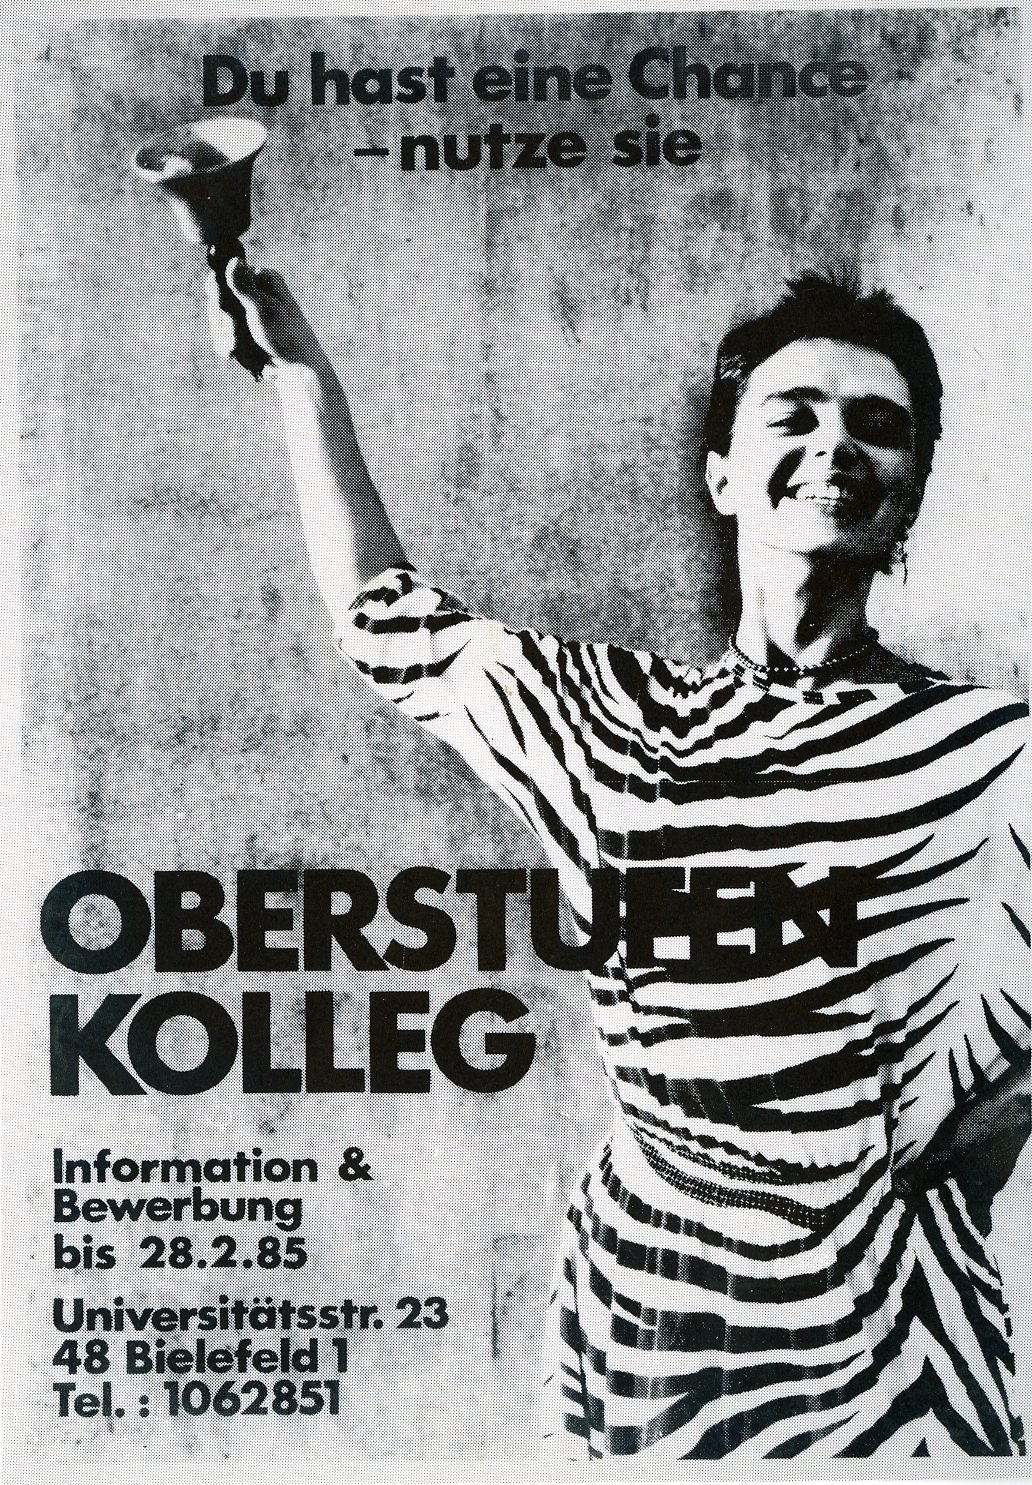 Poster cut-out "Oberstufenkolleg" (upper school)